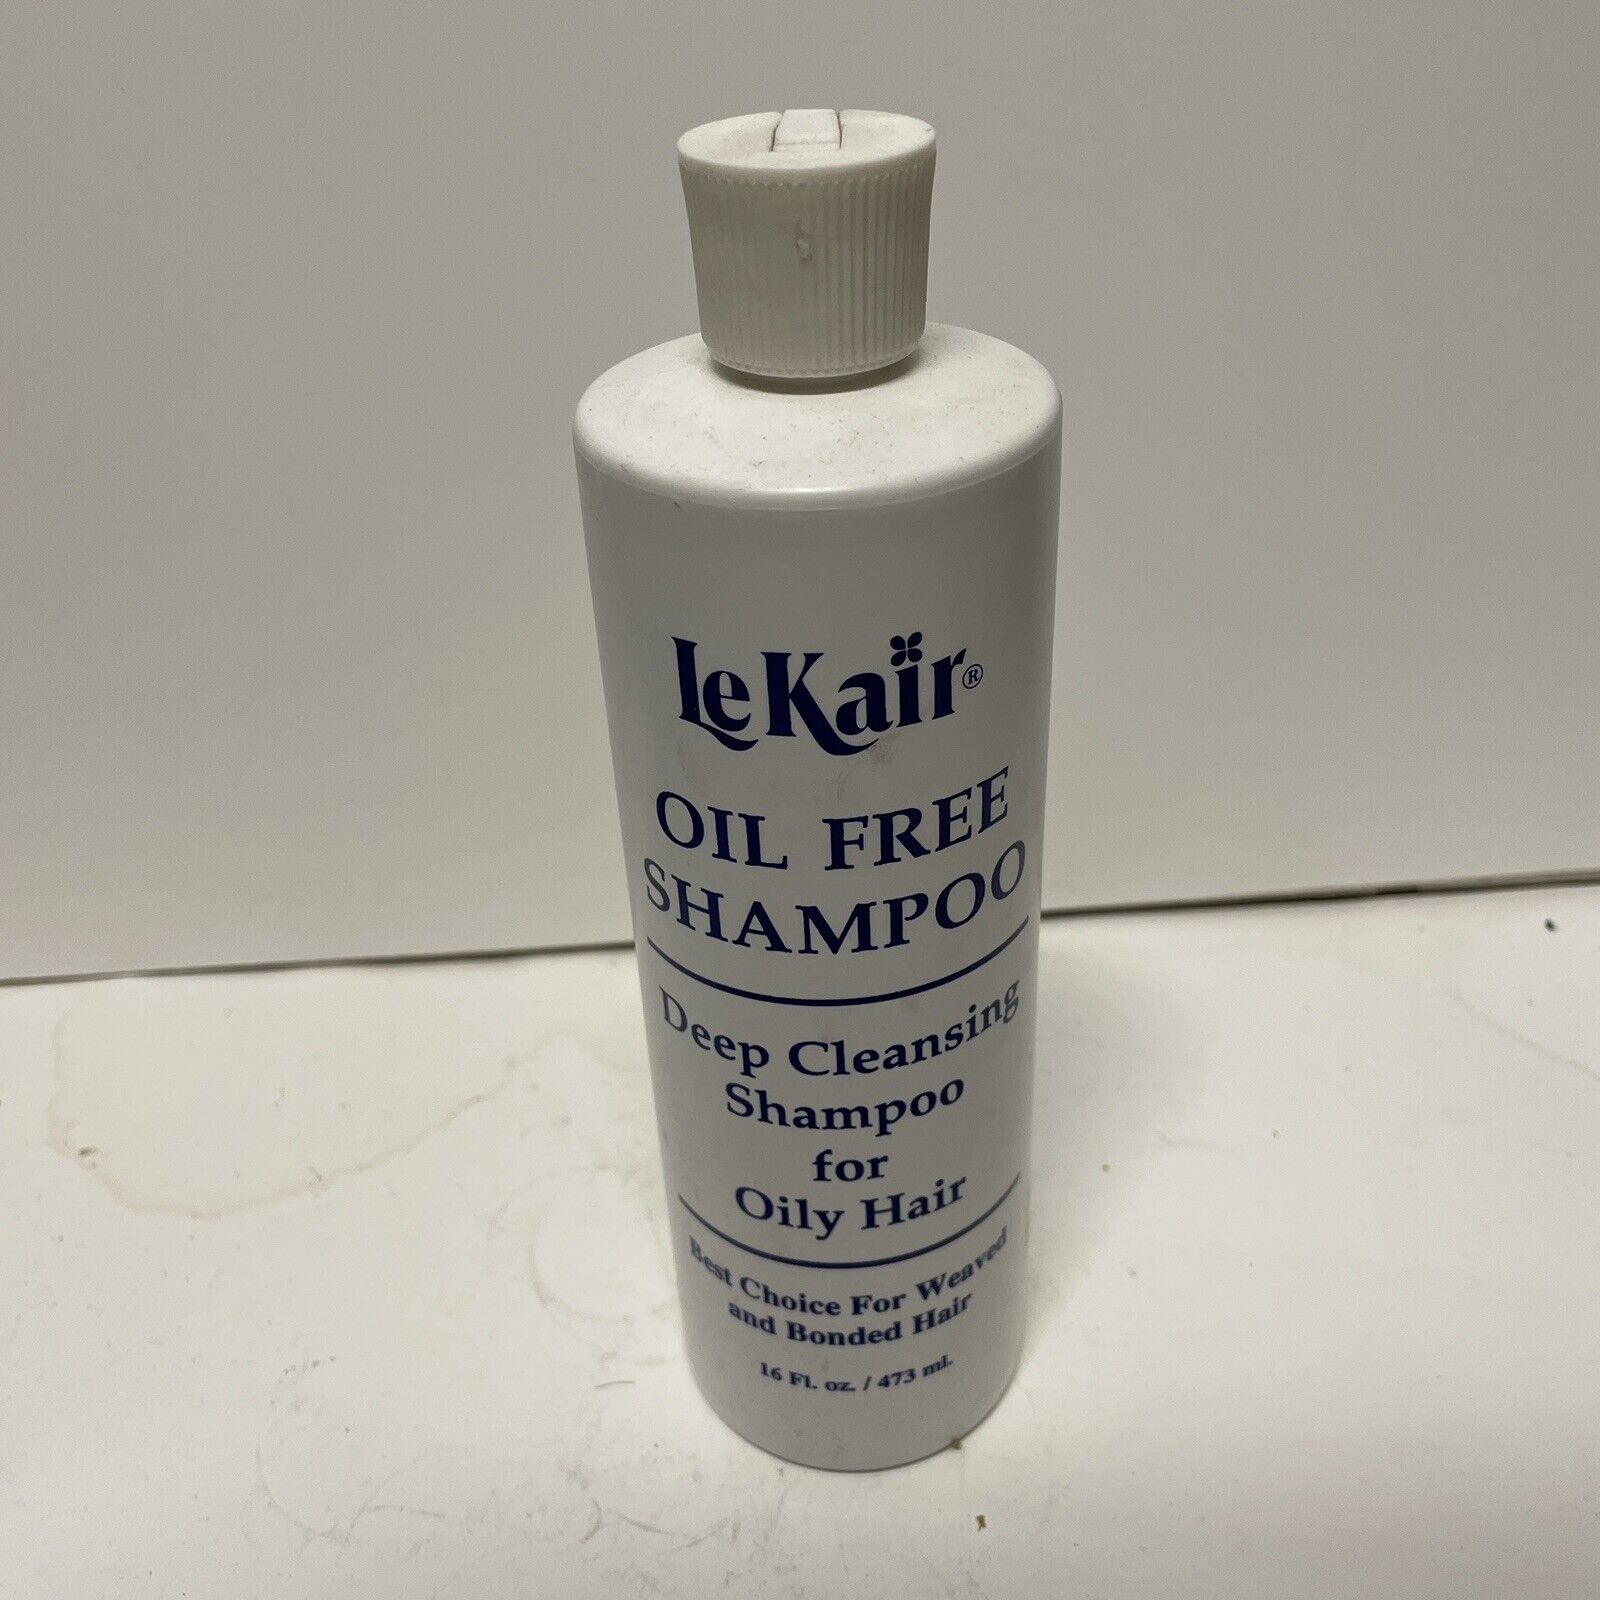 Le Kair Deep Cleansing Shampoo for Oily Hair 16 OZ HTF